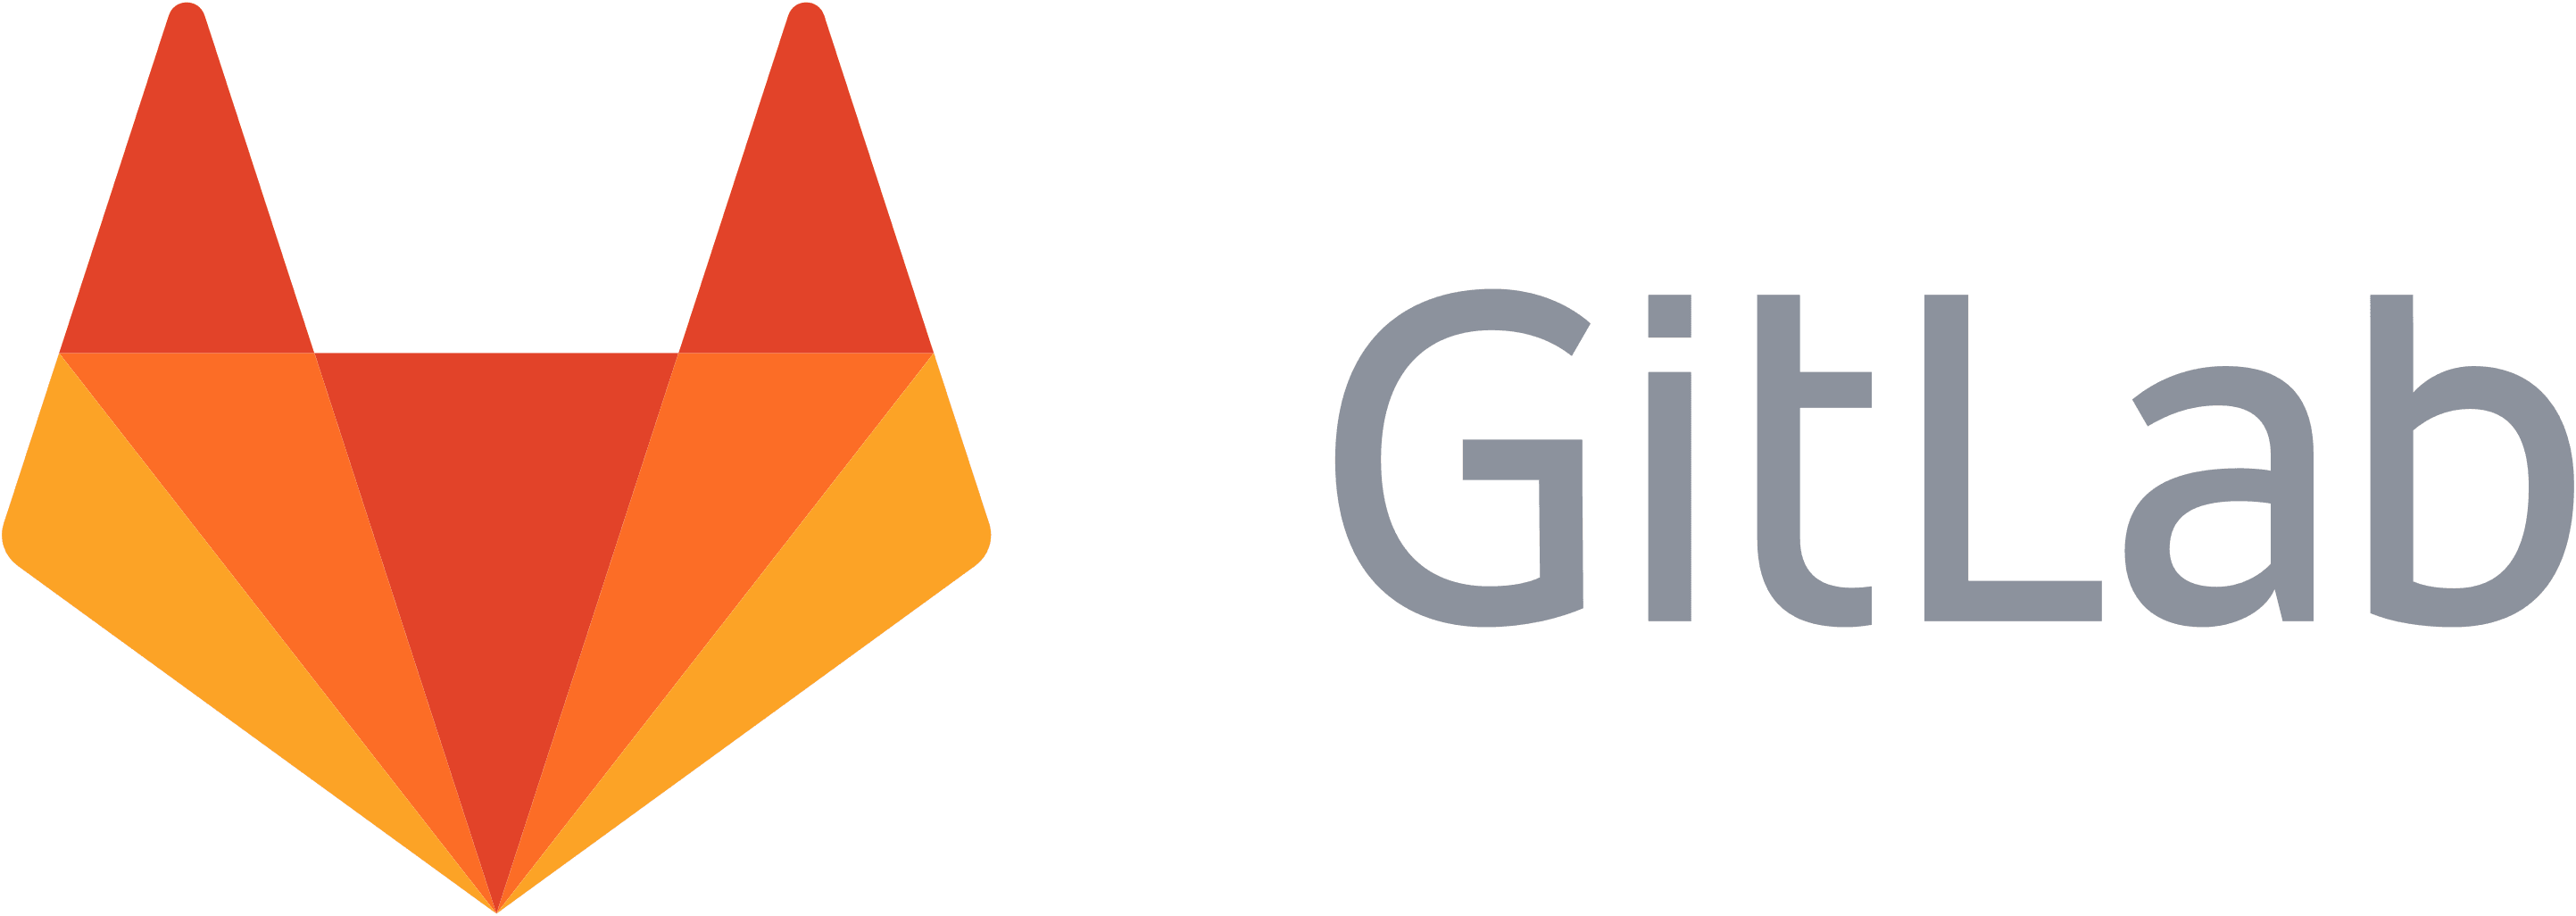 Gitlab Logo Png (2886x1026), Png Download